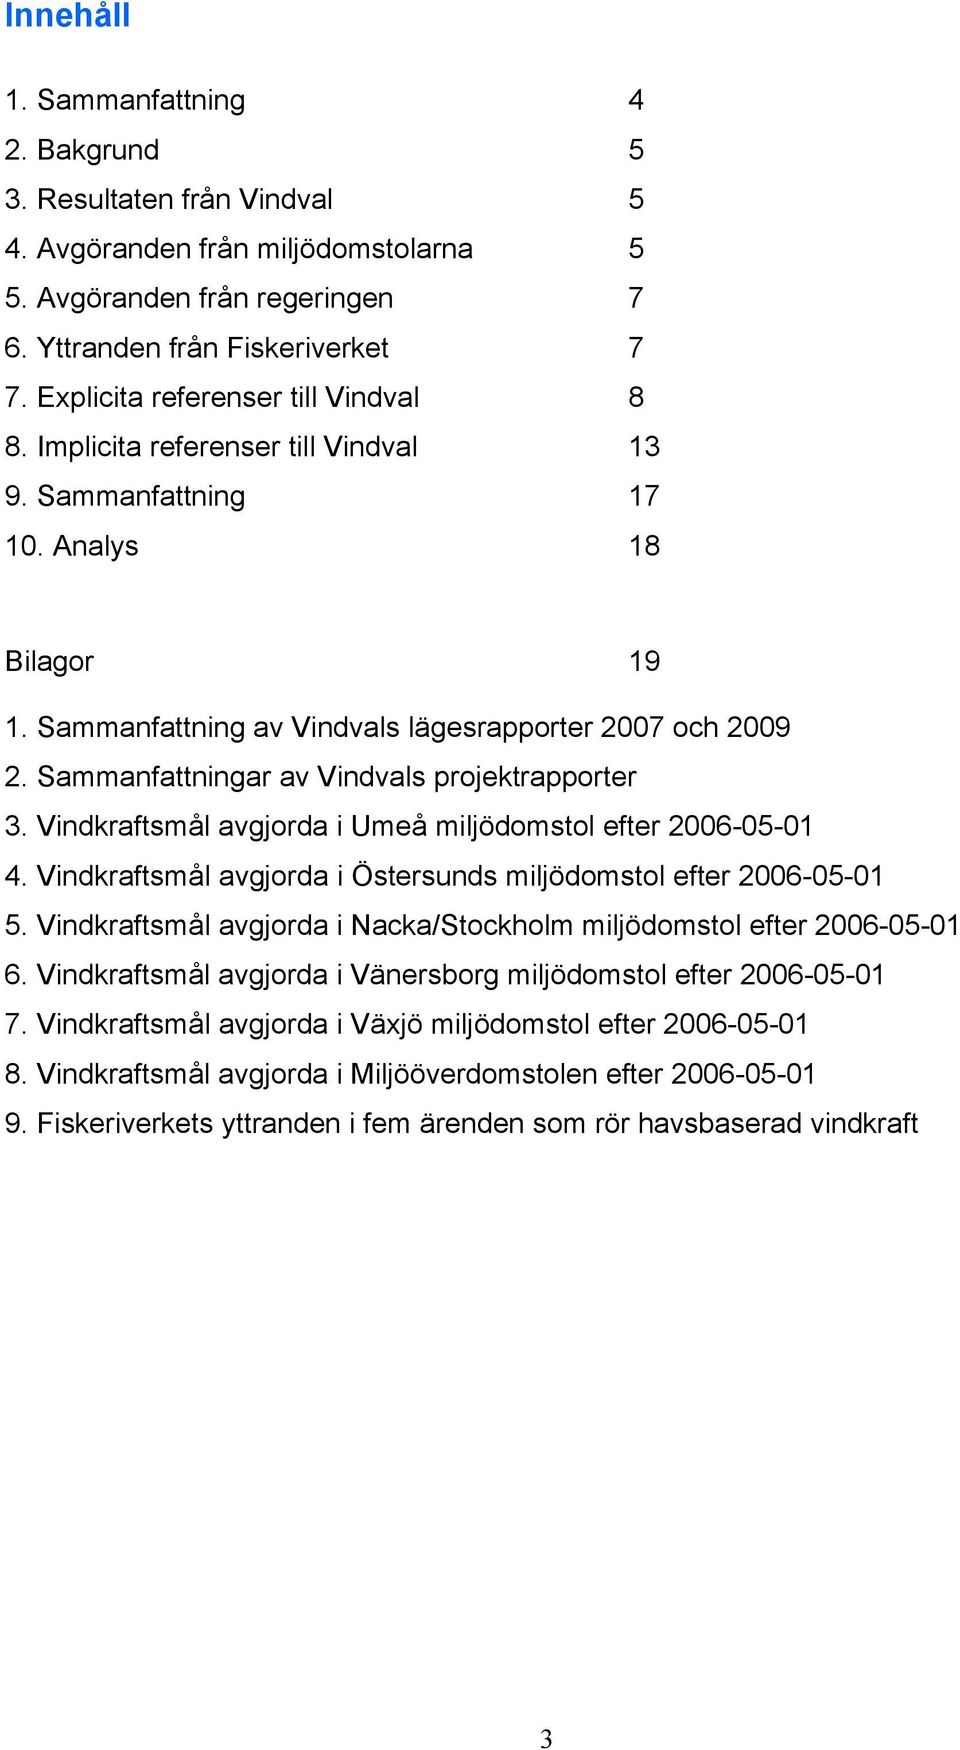 Sammanfattningar av Vindvals projektrapporter 3. Vindkraftsmål avgjorda i Umeå miljödomstol efter 2006-05-01 4. Vindkraftsmål avgjorda i Östersunds miljödomstol efter 2006-05-01 5.